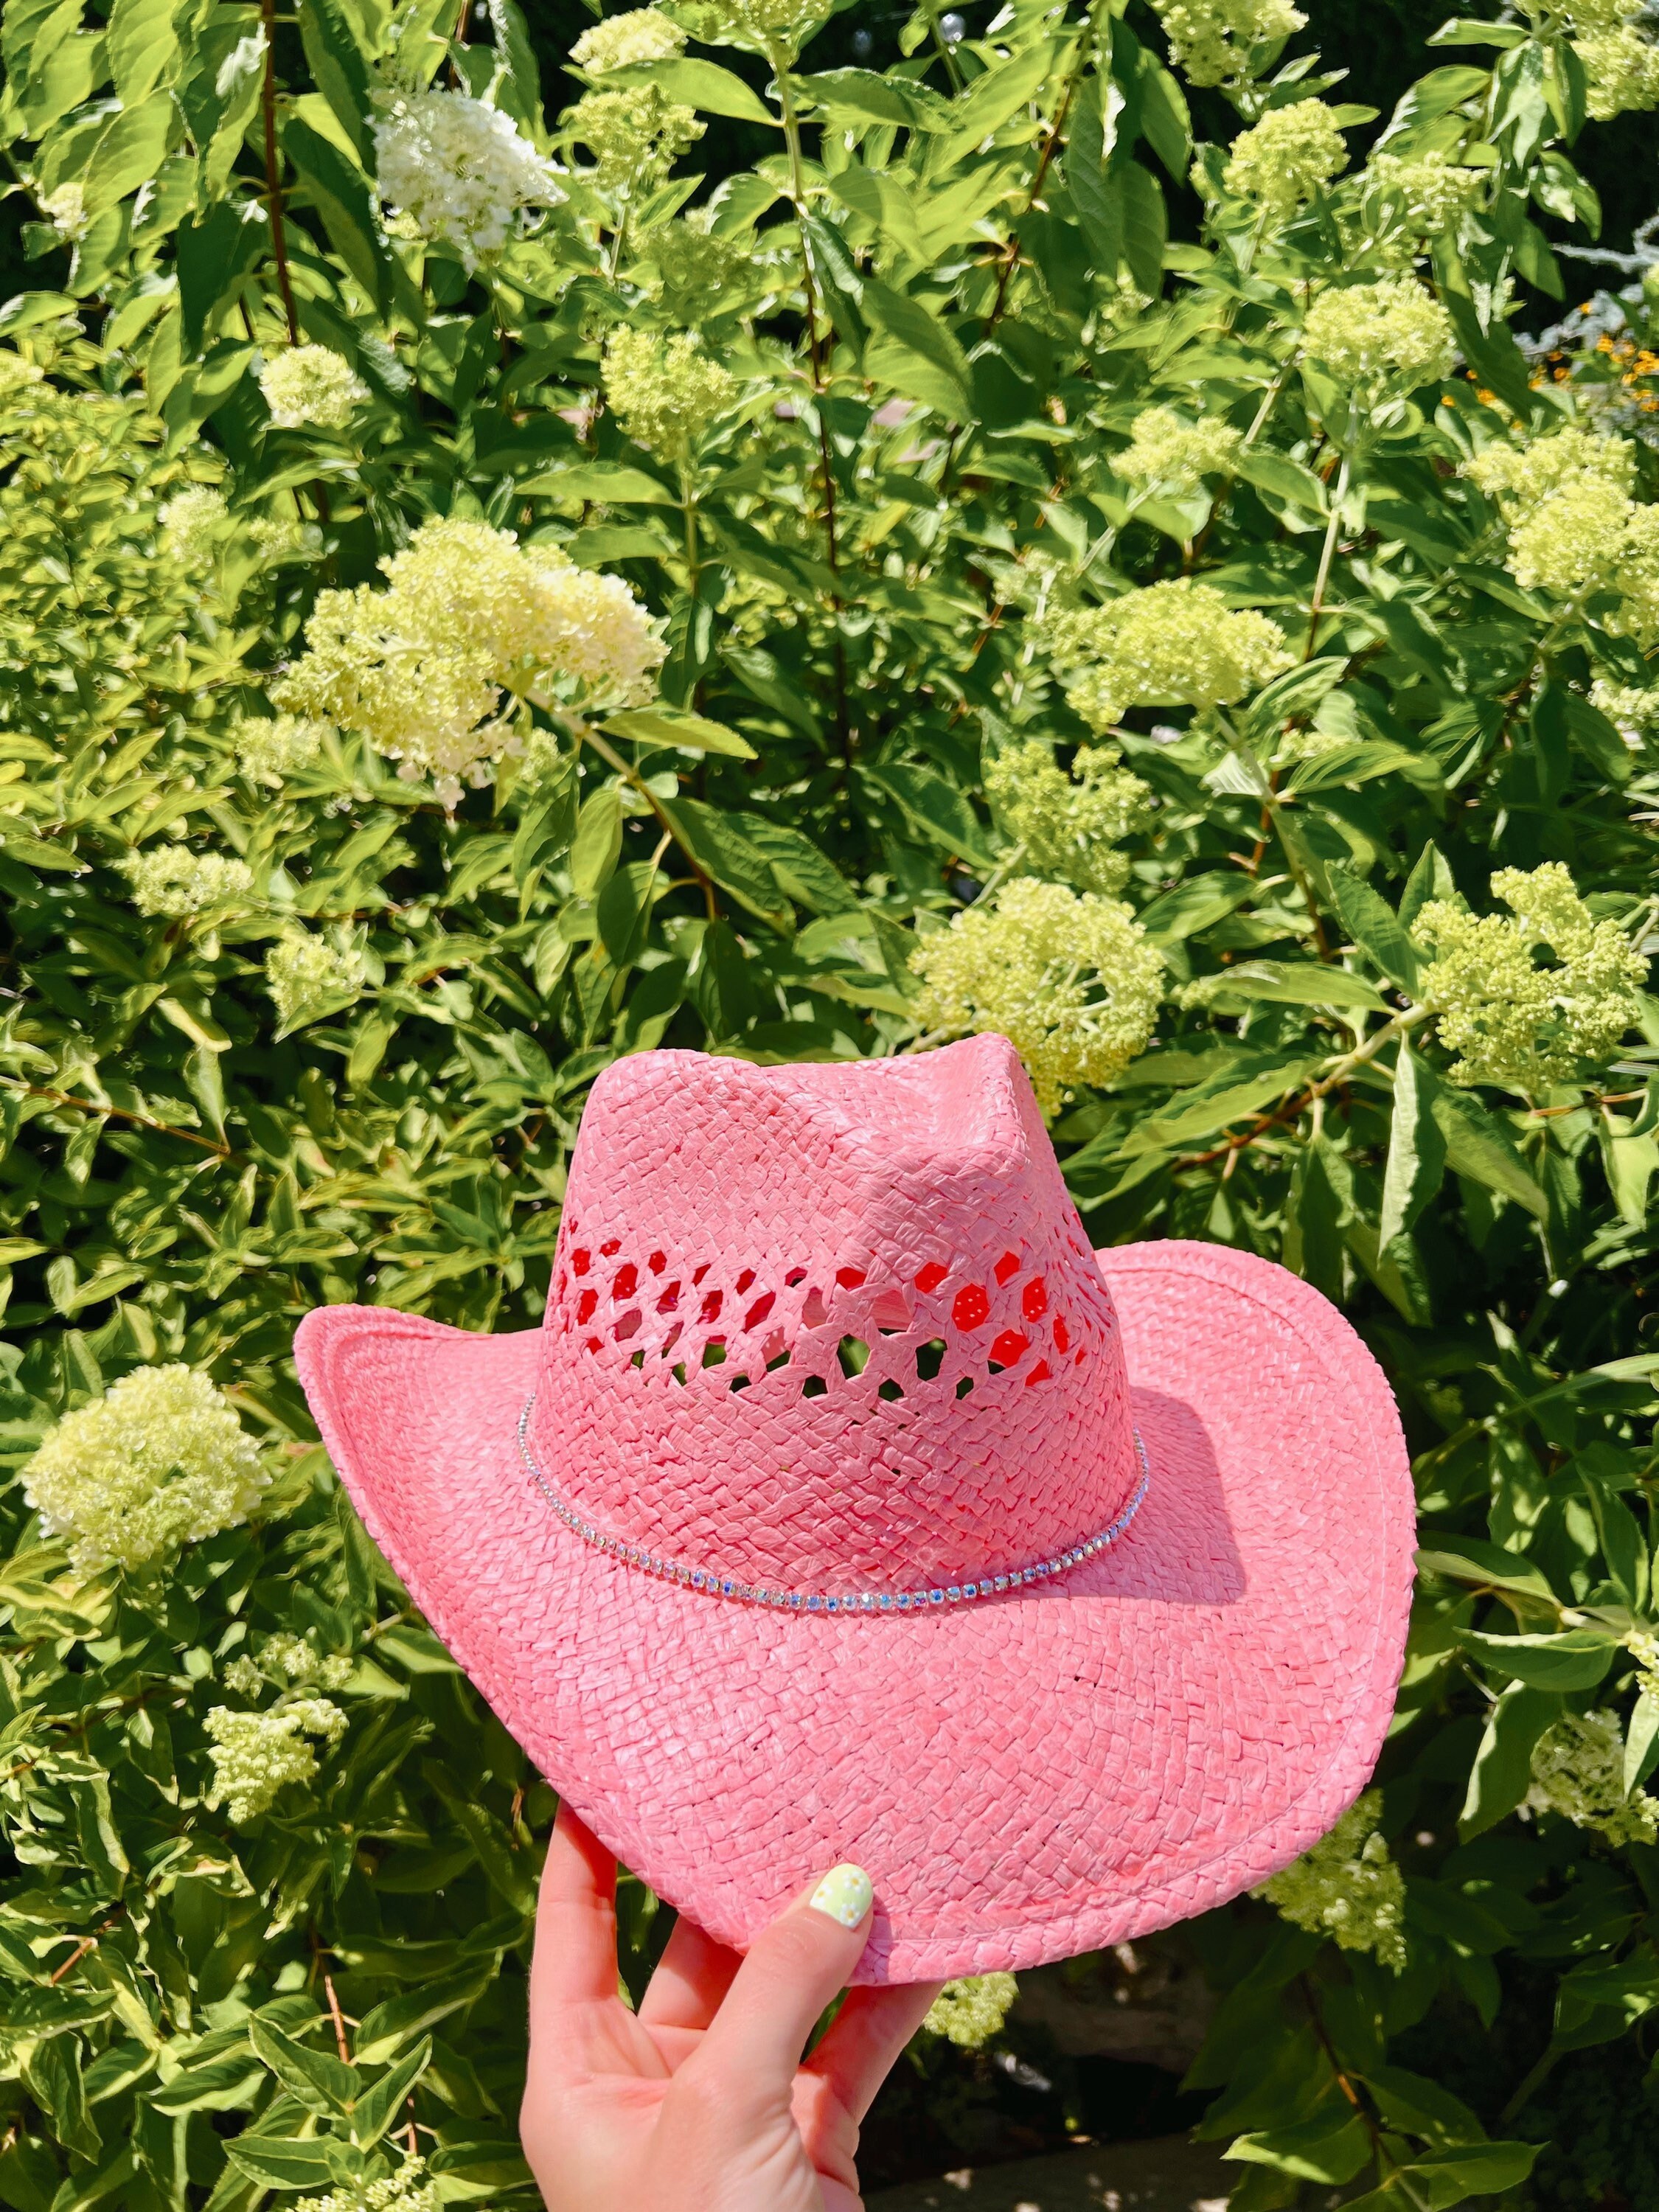 Chapeau de Cowboy Glimmer, Rose - Aux Feux de la Fête - Paris